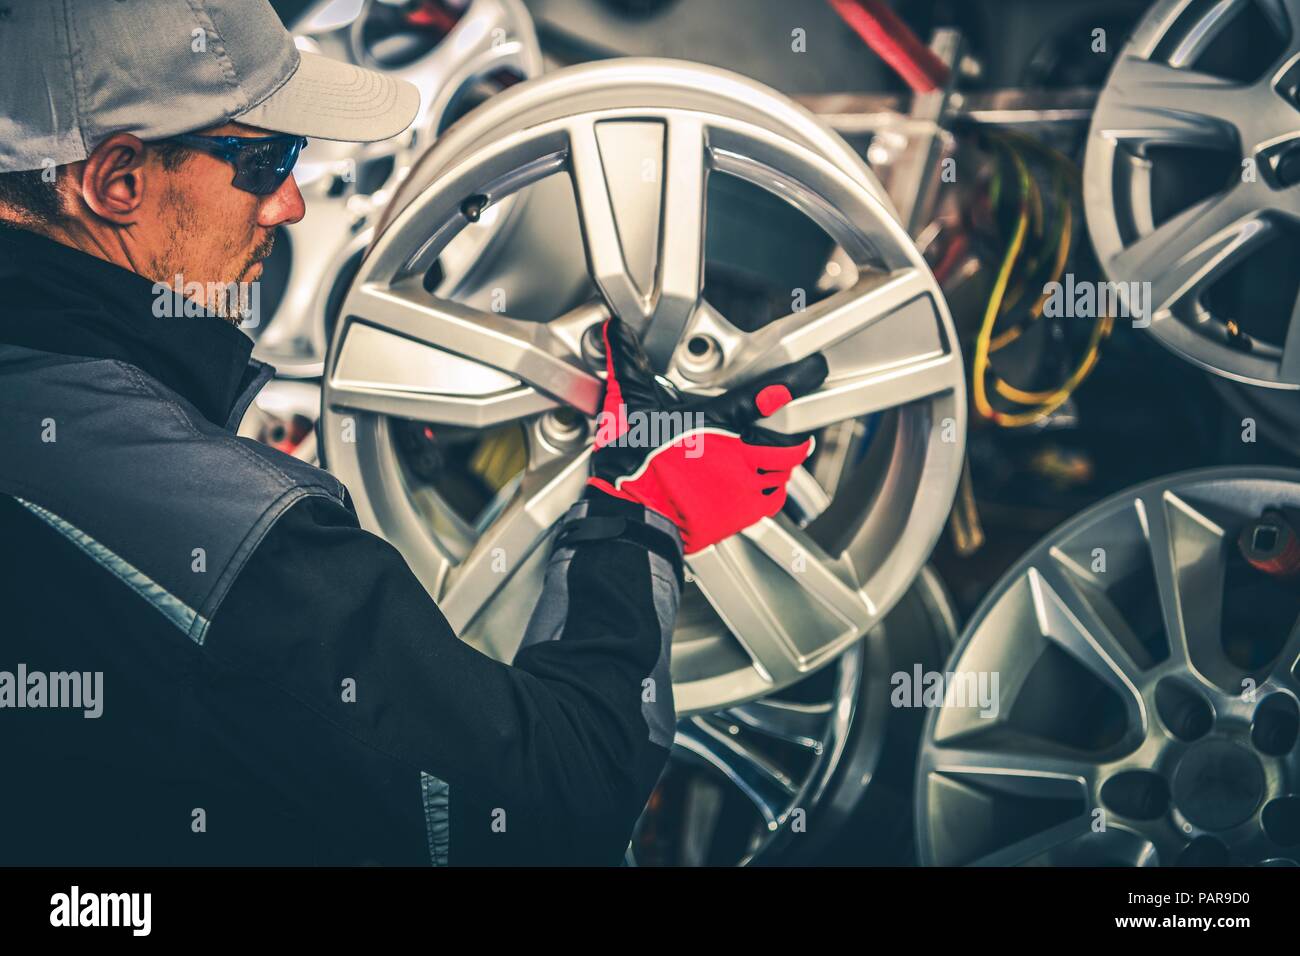 Kauf neue Leichtmetallräder und saisonale Reifen wechseln Konzept Foto. Kaukasische Car Service Arbeiter mit großen Rim in den Händen. Stockfoto